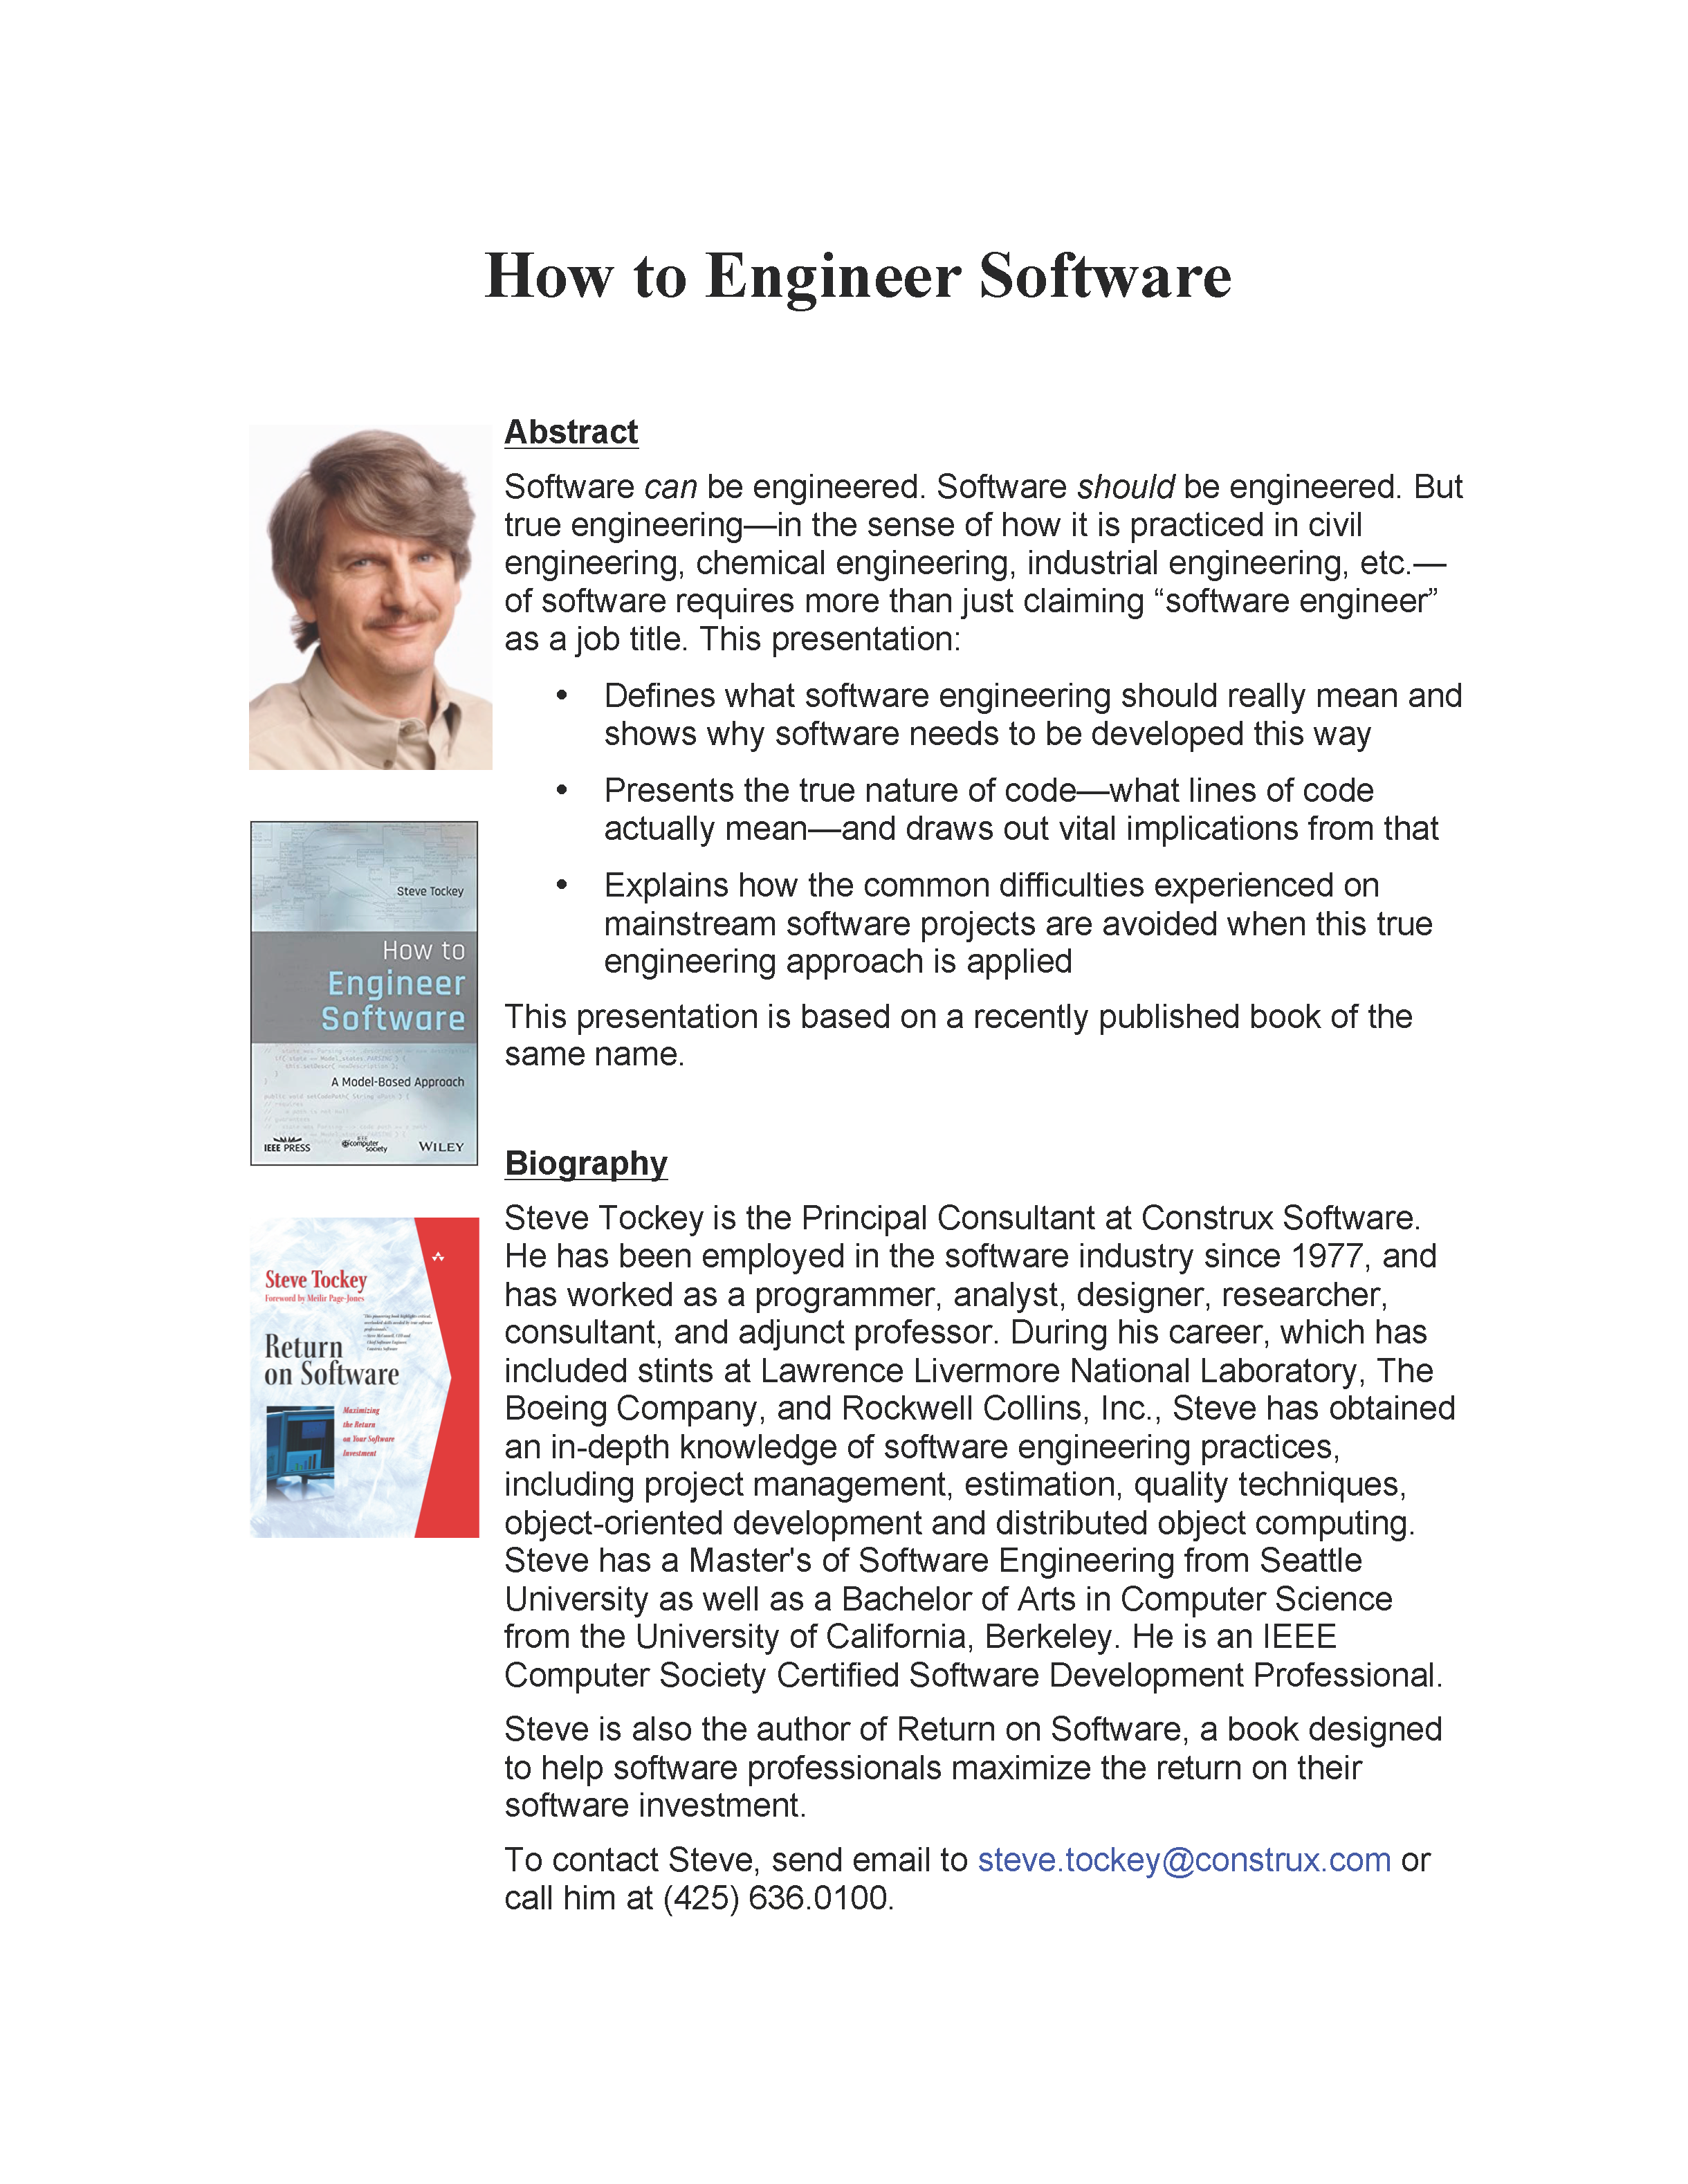 plak Slepen Dwang News Articles | Seminar: How to Engineer Software